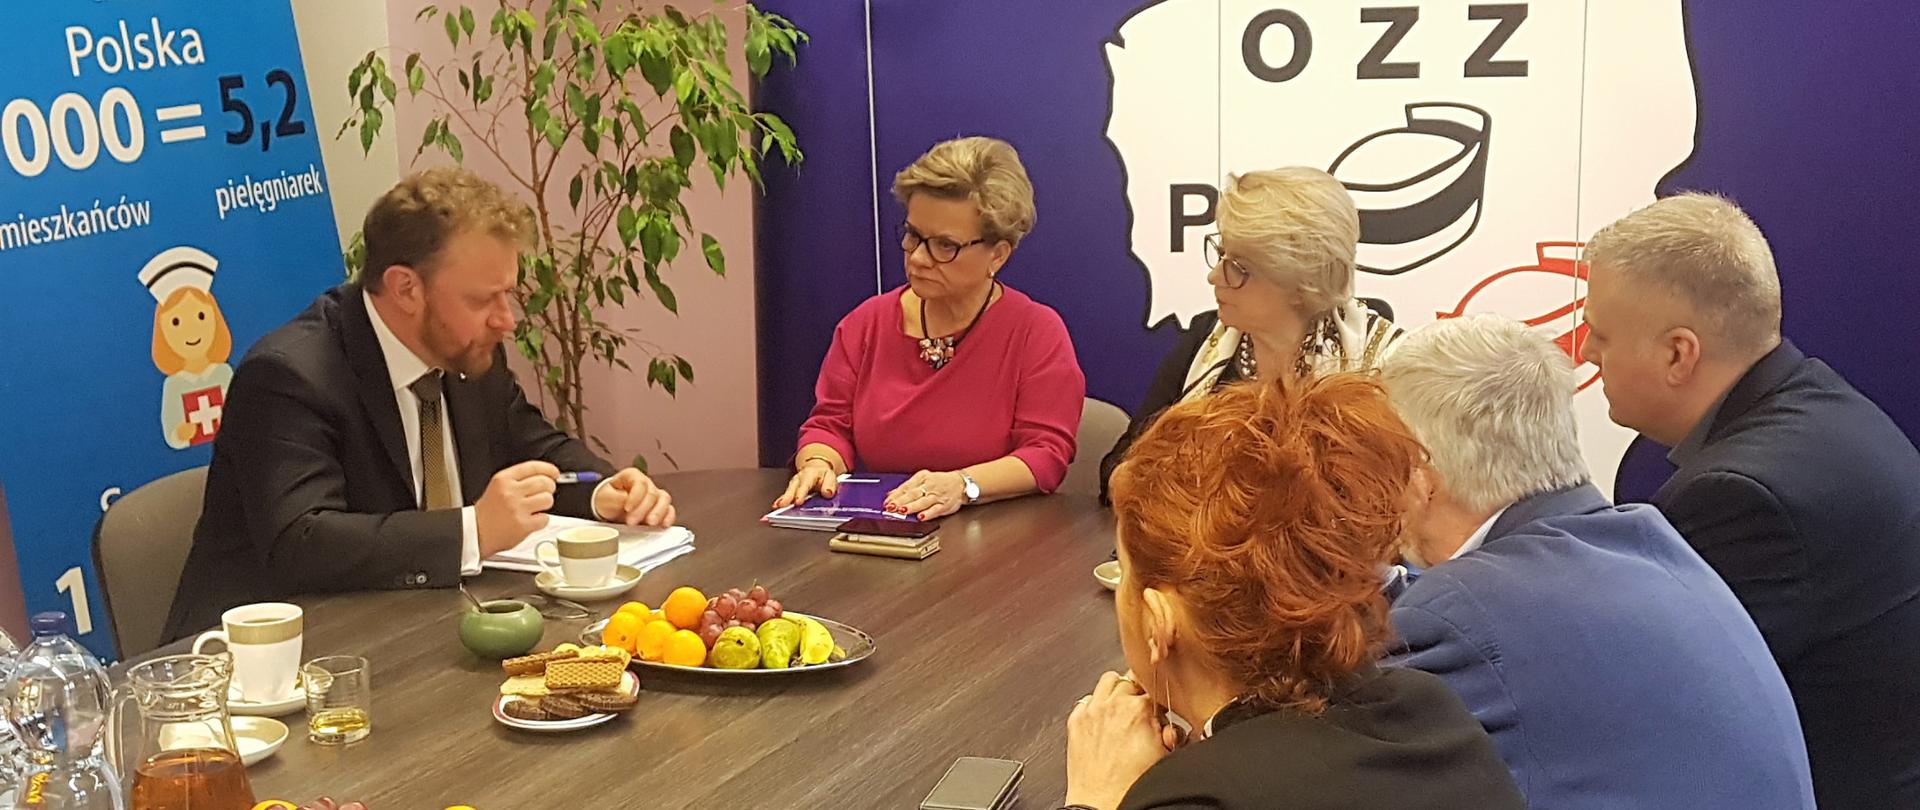 
Minister zdrowia Łukasz Szumowski spotkał się w siedzibie OZZPiP z przedstawicielami Ogólnopolskiego Związku Zawodowego Pielęgniarek i Położnych oraz Naczelną Izbą Pielęgniarek i Położnych.